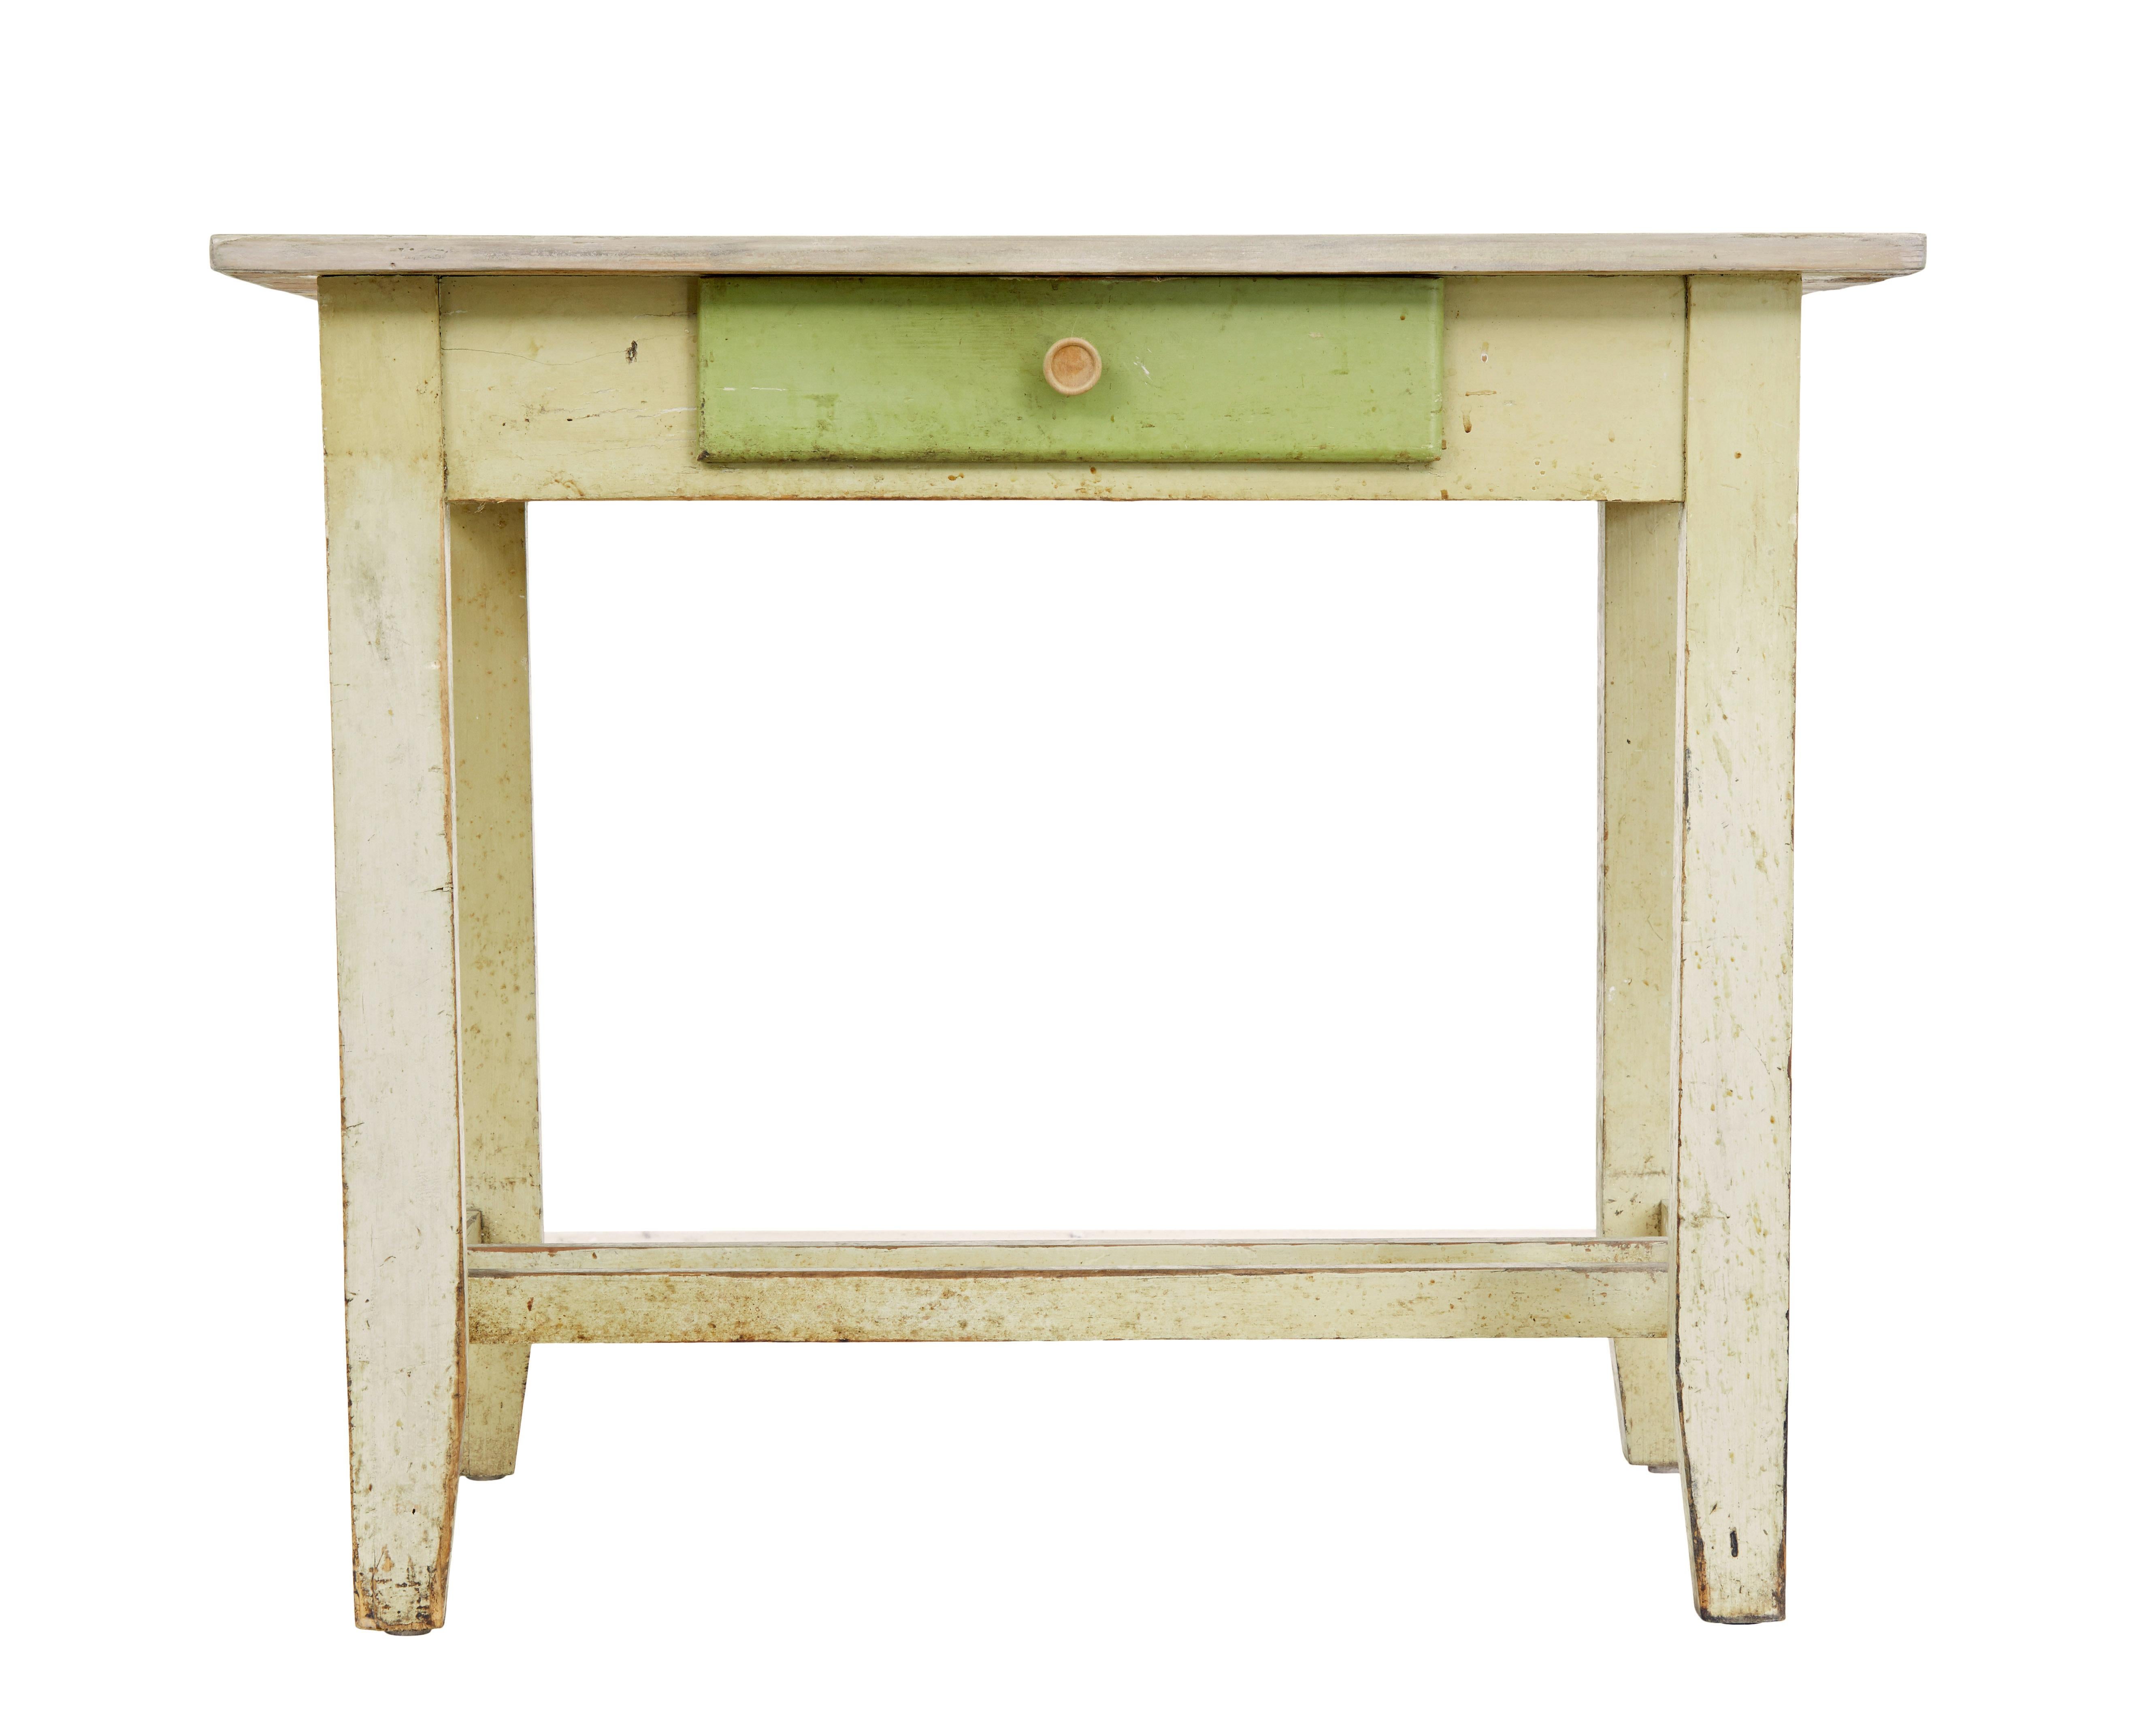 Grün bemalter skandinavischer Beistelltisch aus dem 19. Jahrhundert, um 1890.

Praktischer Tisch für viele Verwendungszwecke im Haus, der sich auch gut als Flurtisch oder im Gartenzimmer eignet.

Der rechteckige Sockel wurde später vom Rest des